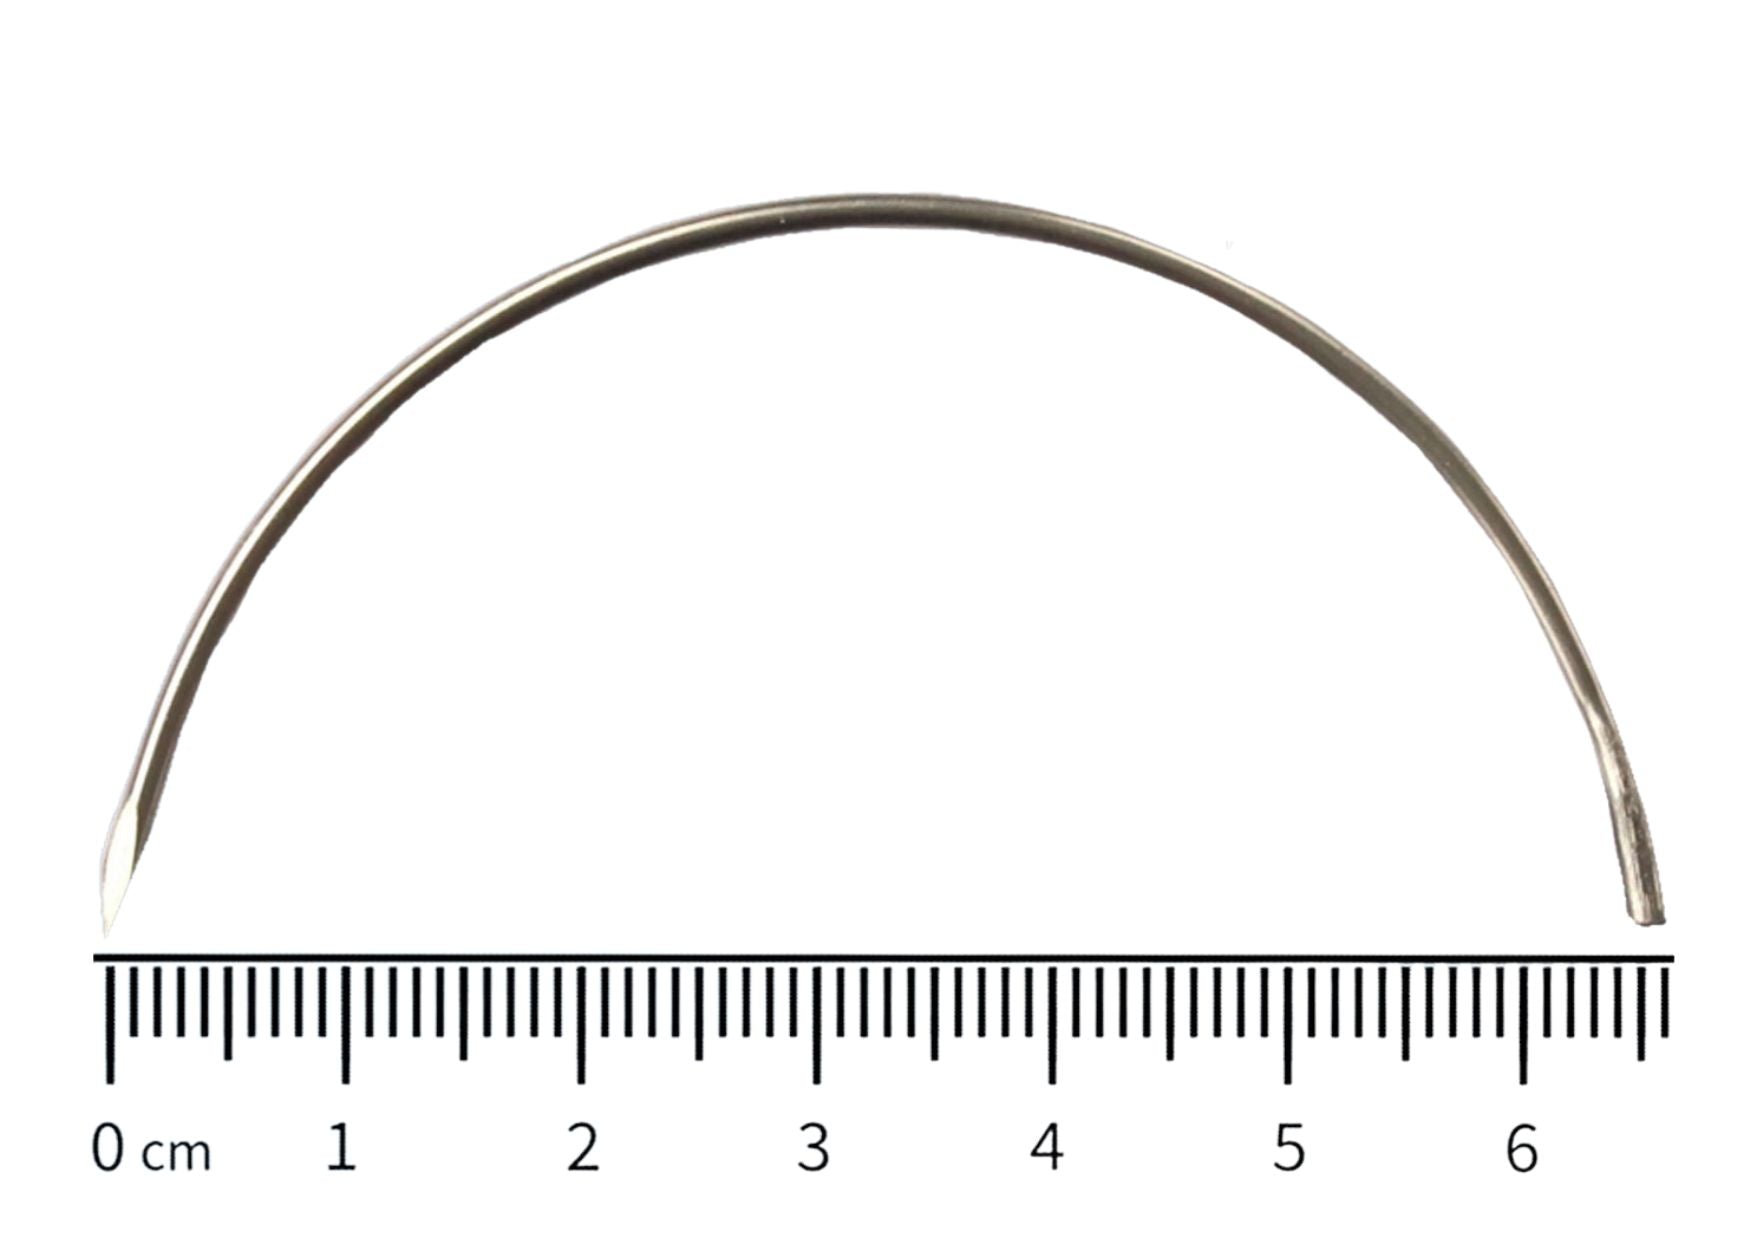 Needles, semicircle, trocar - 0